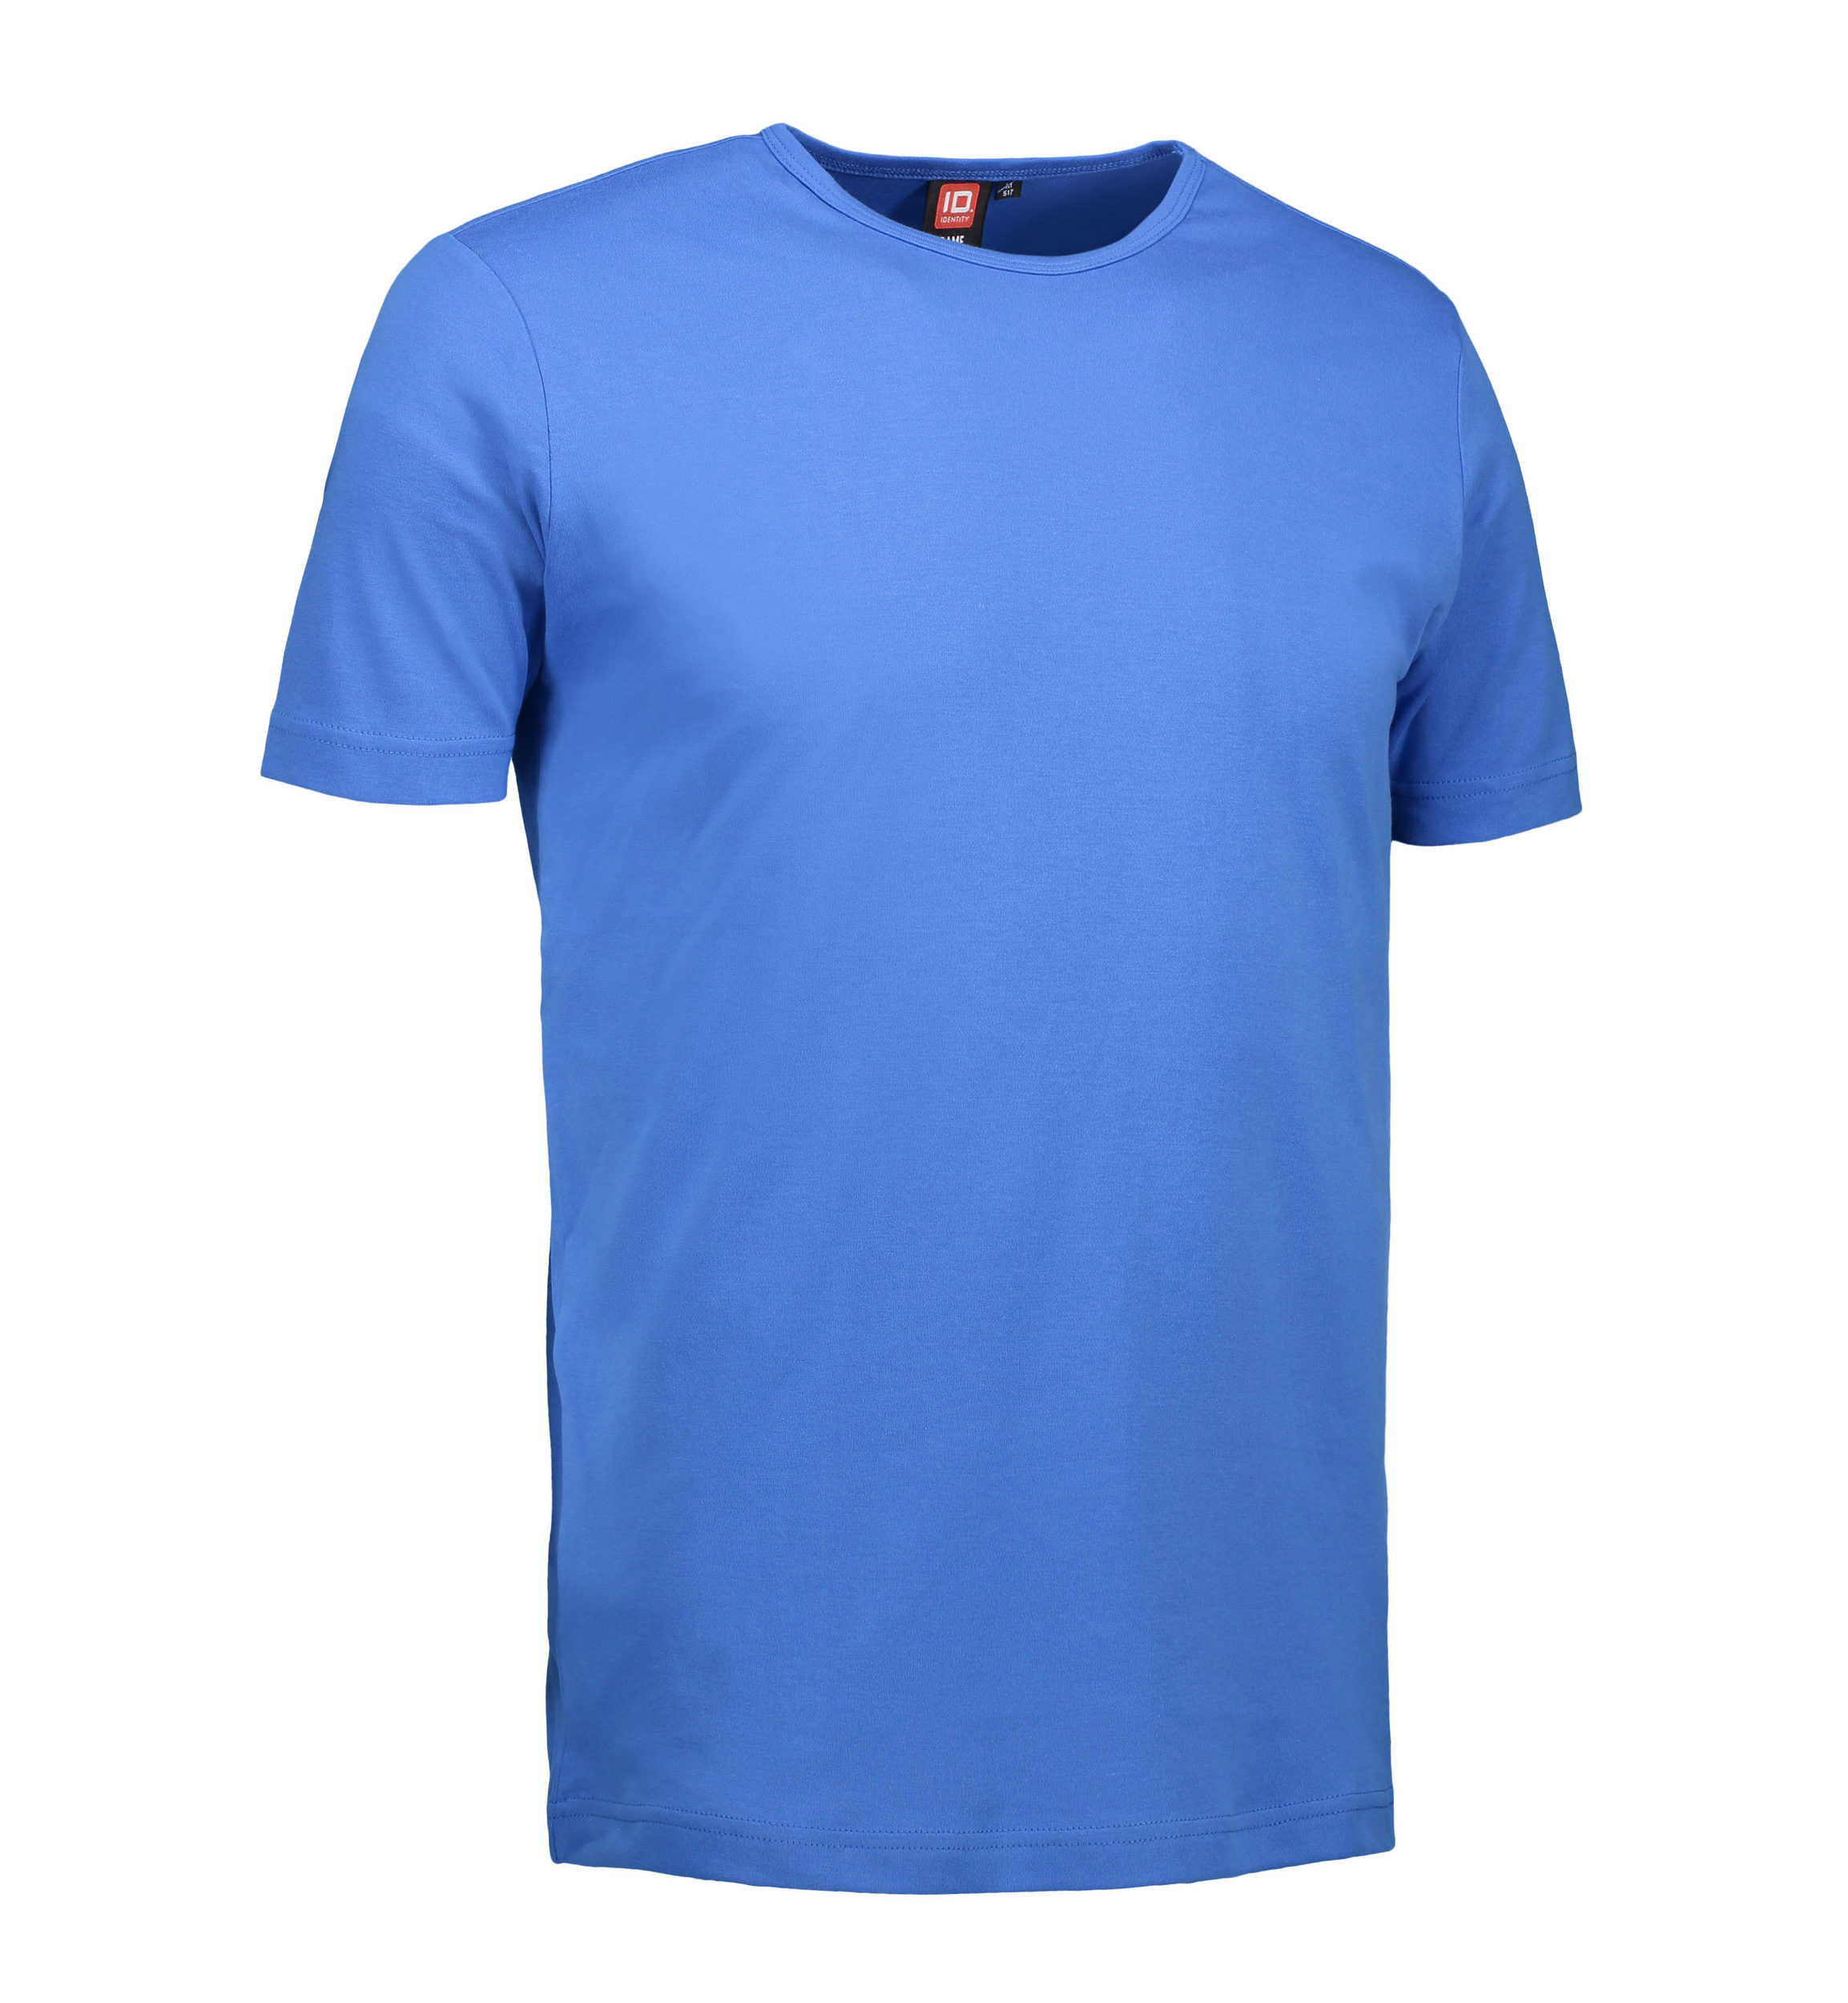 Billede af Blå t-shirt med rund hals til mænd - M hos Sygeplejebutikken.dk